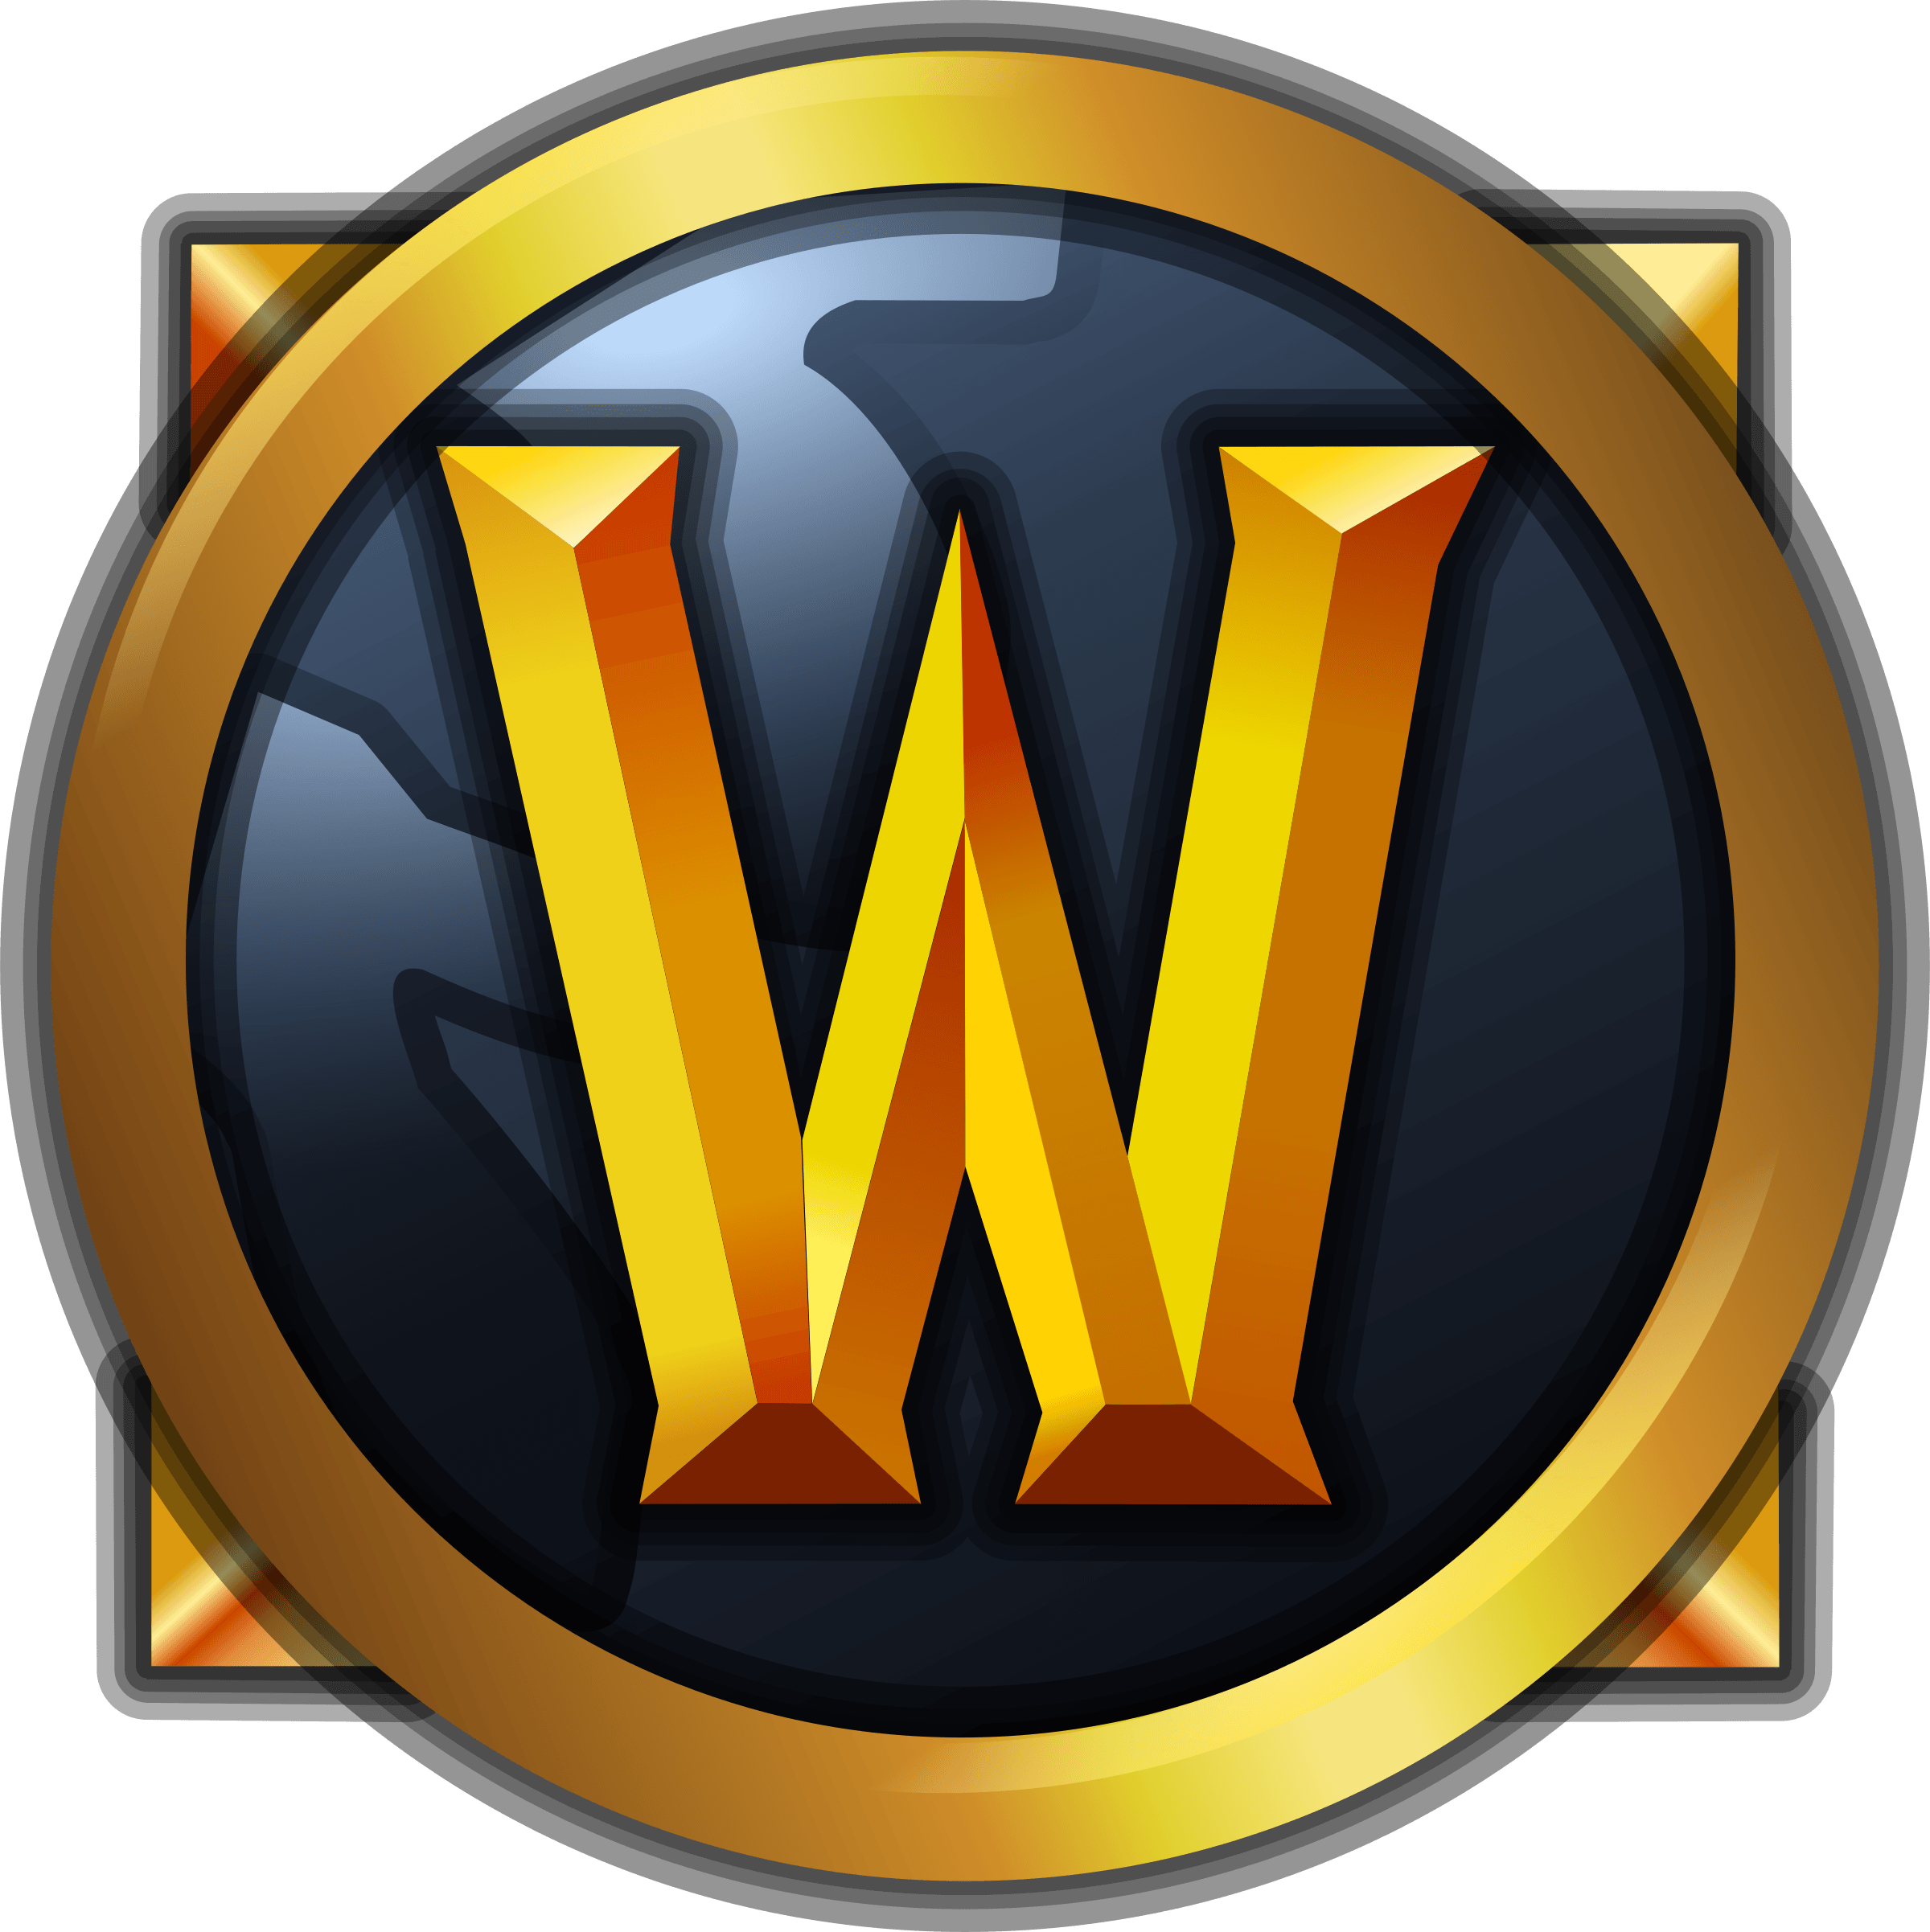 Warcraft Logo - World of Warcraft Logo PNG Transparent & SVG Vector